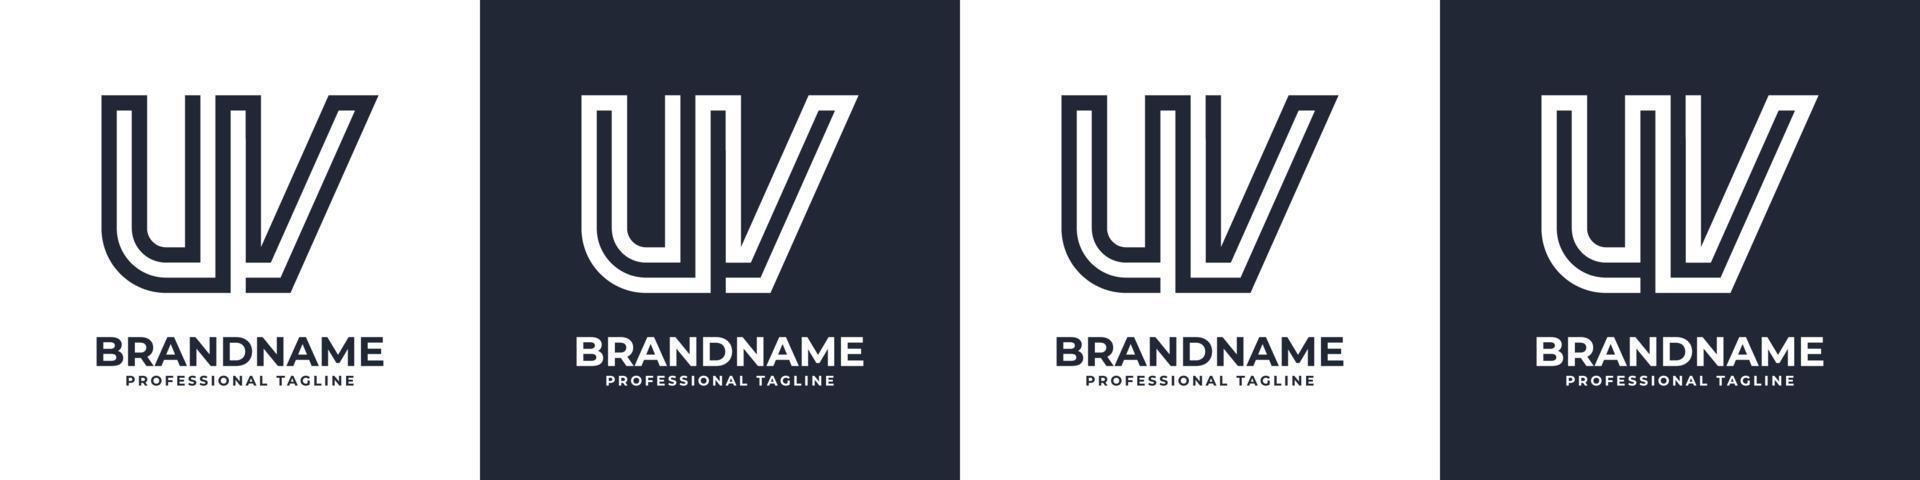 semplice uv monogramma logo, adatto per qualunque attività commerciale con uv o vu iniziale. vettore